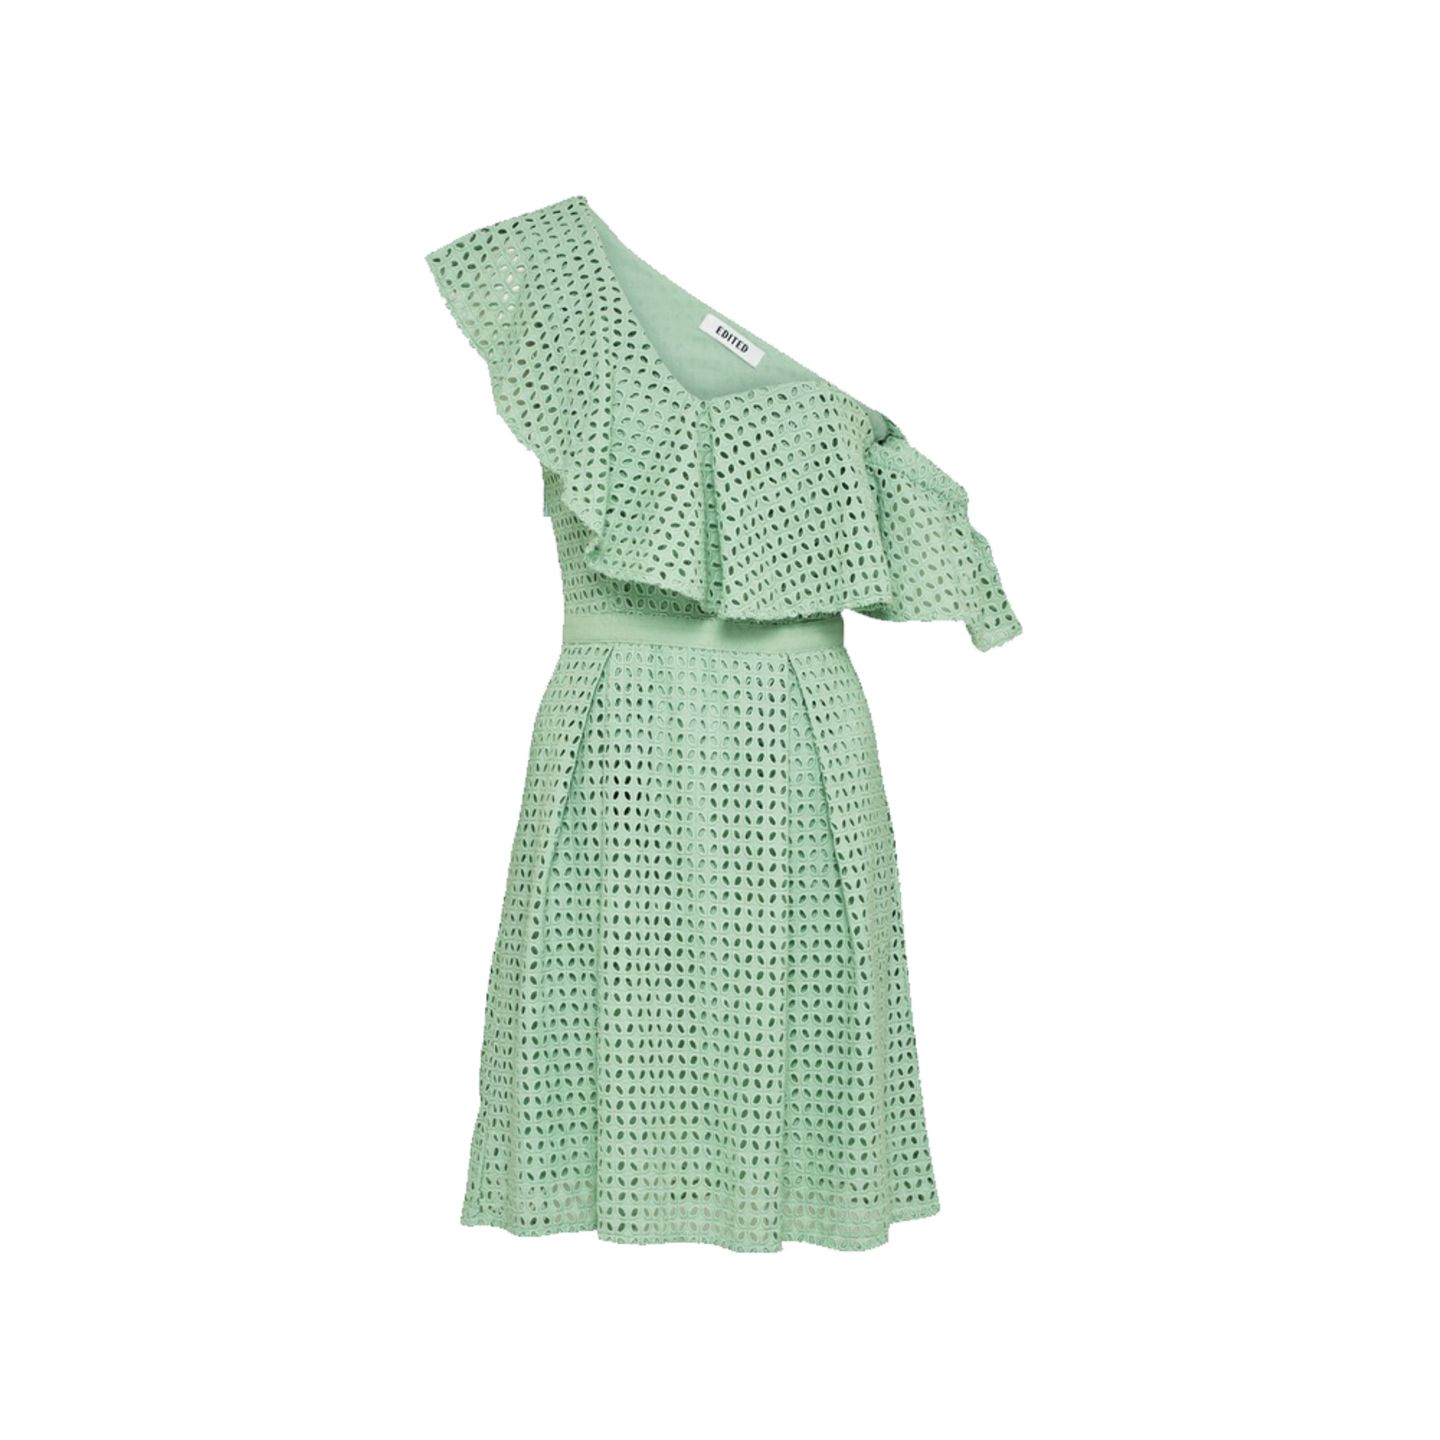 Grünes Kleid mit Lock-Optik und Taillenband. Von Edited, circa 100 Euro.